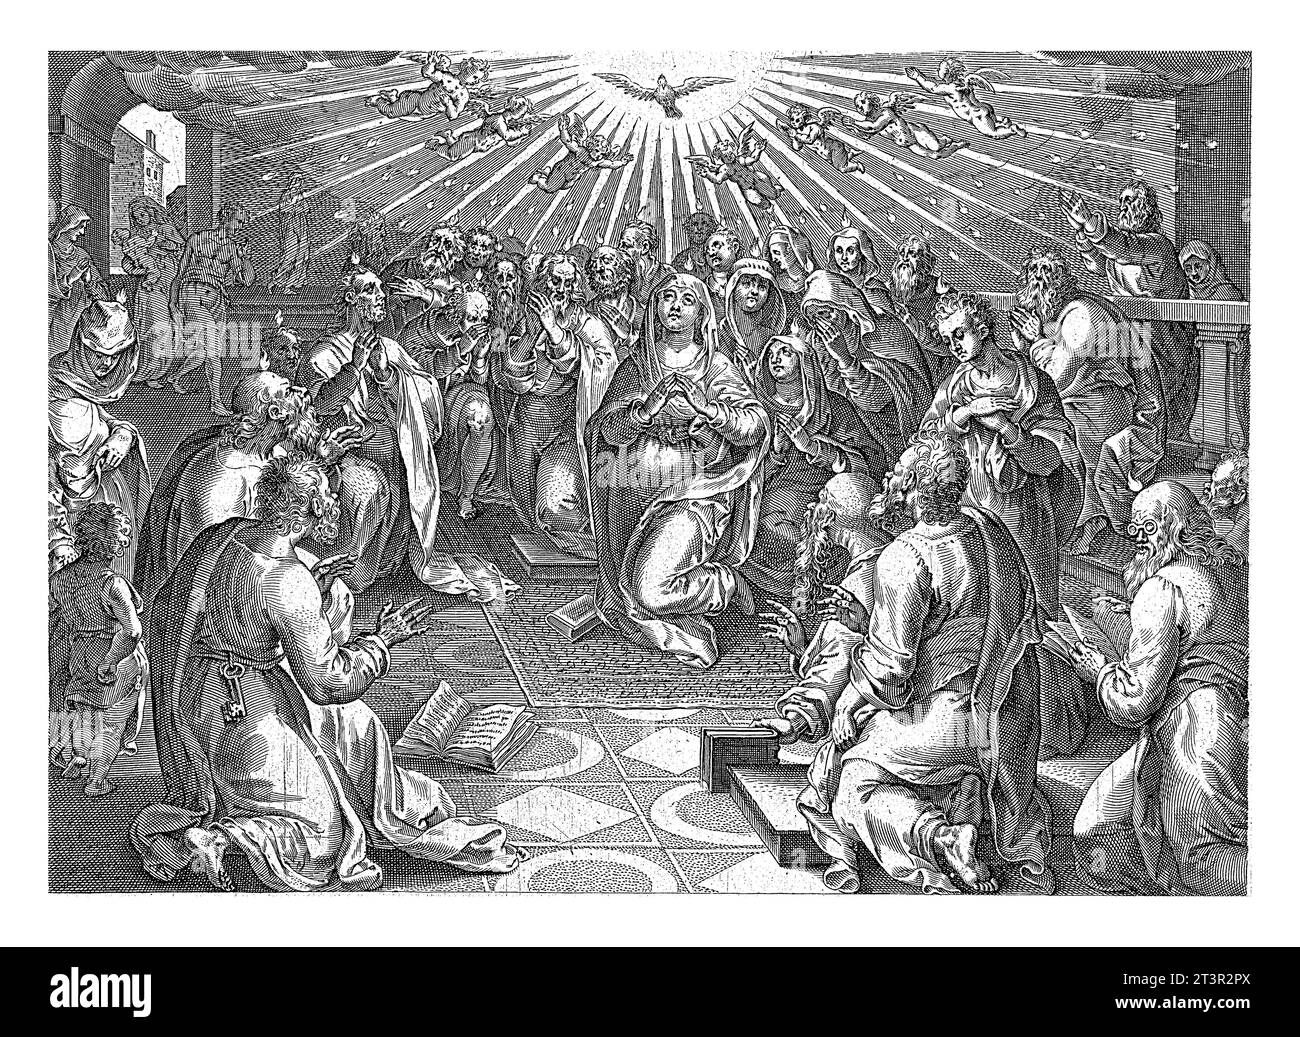 Effusion de l'Esprit Saint, anonyme, d'après Philips Galle, d'après Jan van der Straet, 1646 l'Esprit Saint apparaît sous la forme d'une colombe et est pou Banque D'Images